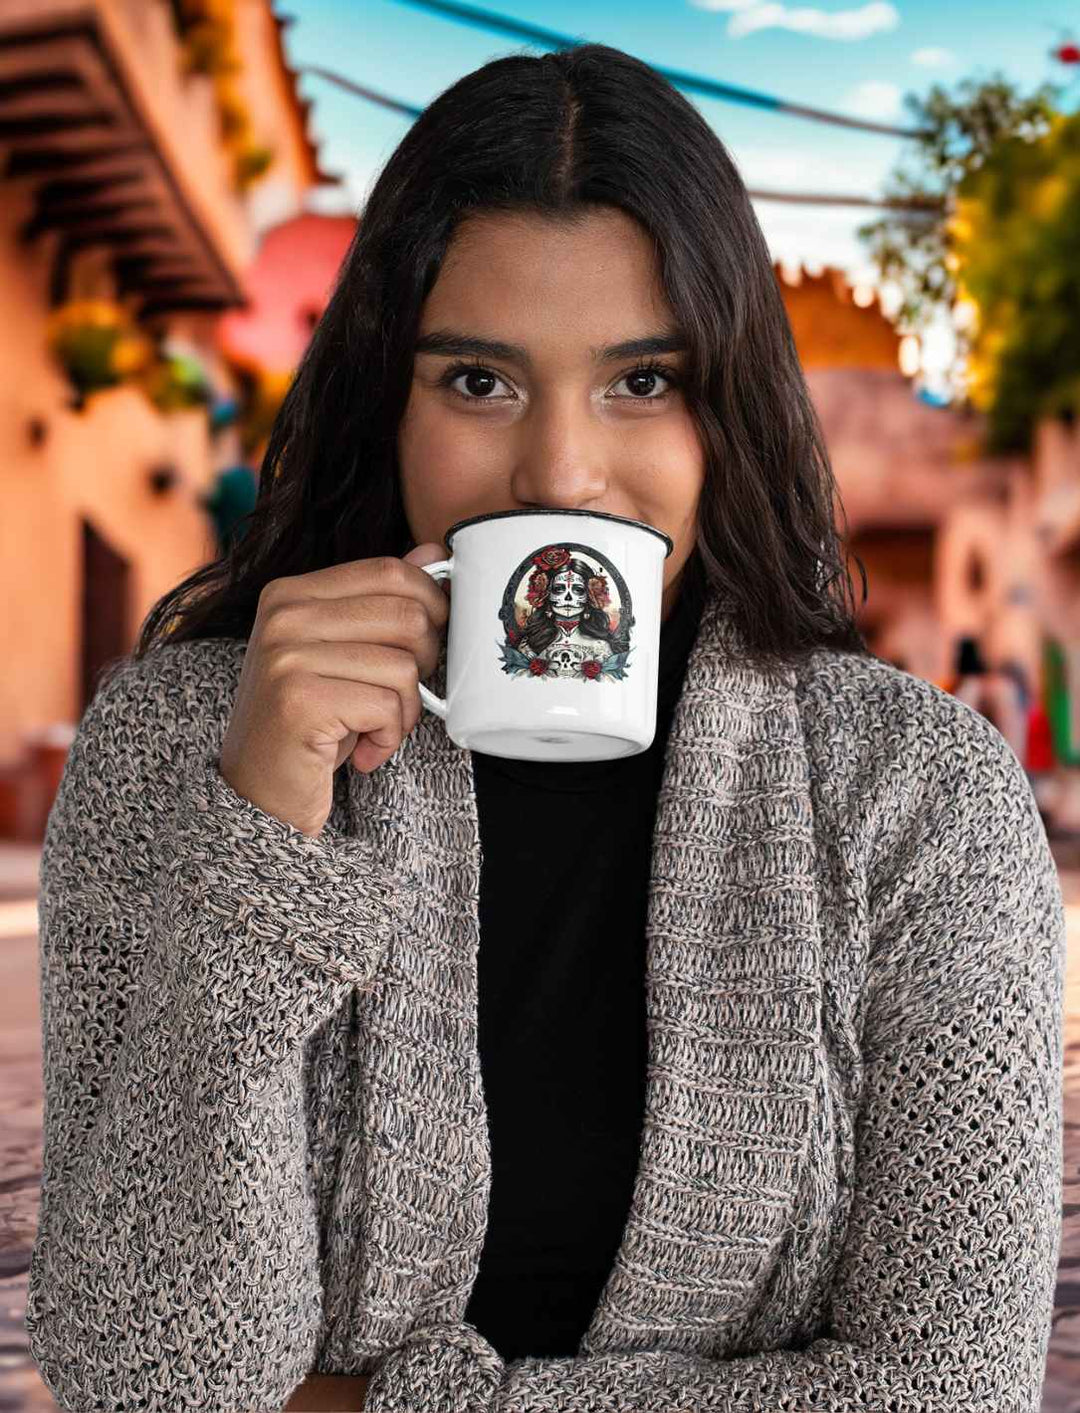 Junge Frau genießt einen Schluck aus der weißen La Catrina Emaille-Tasse, stehend auf einer typischen mexikanischen Straße während des Dia de los Muertos – Runental.de